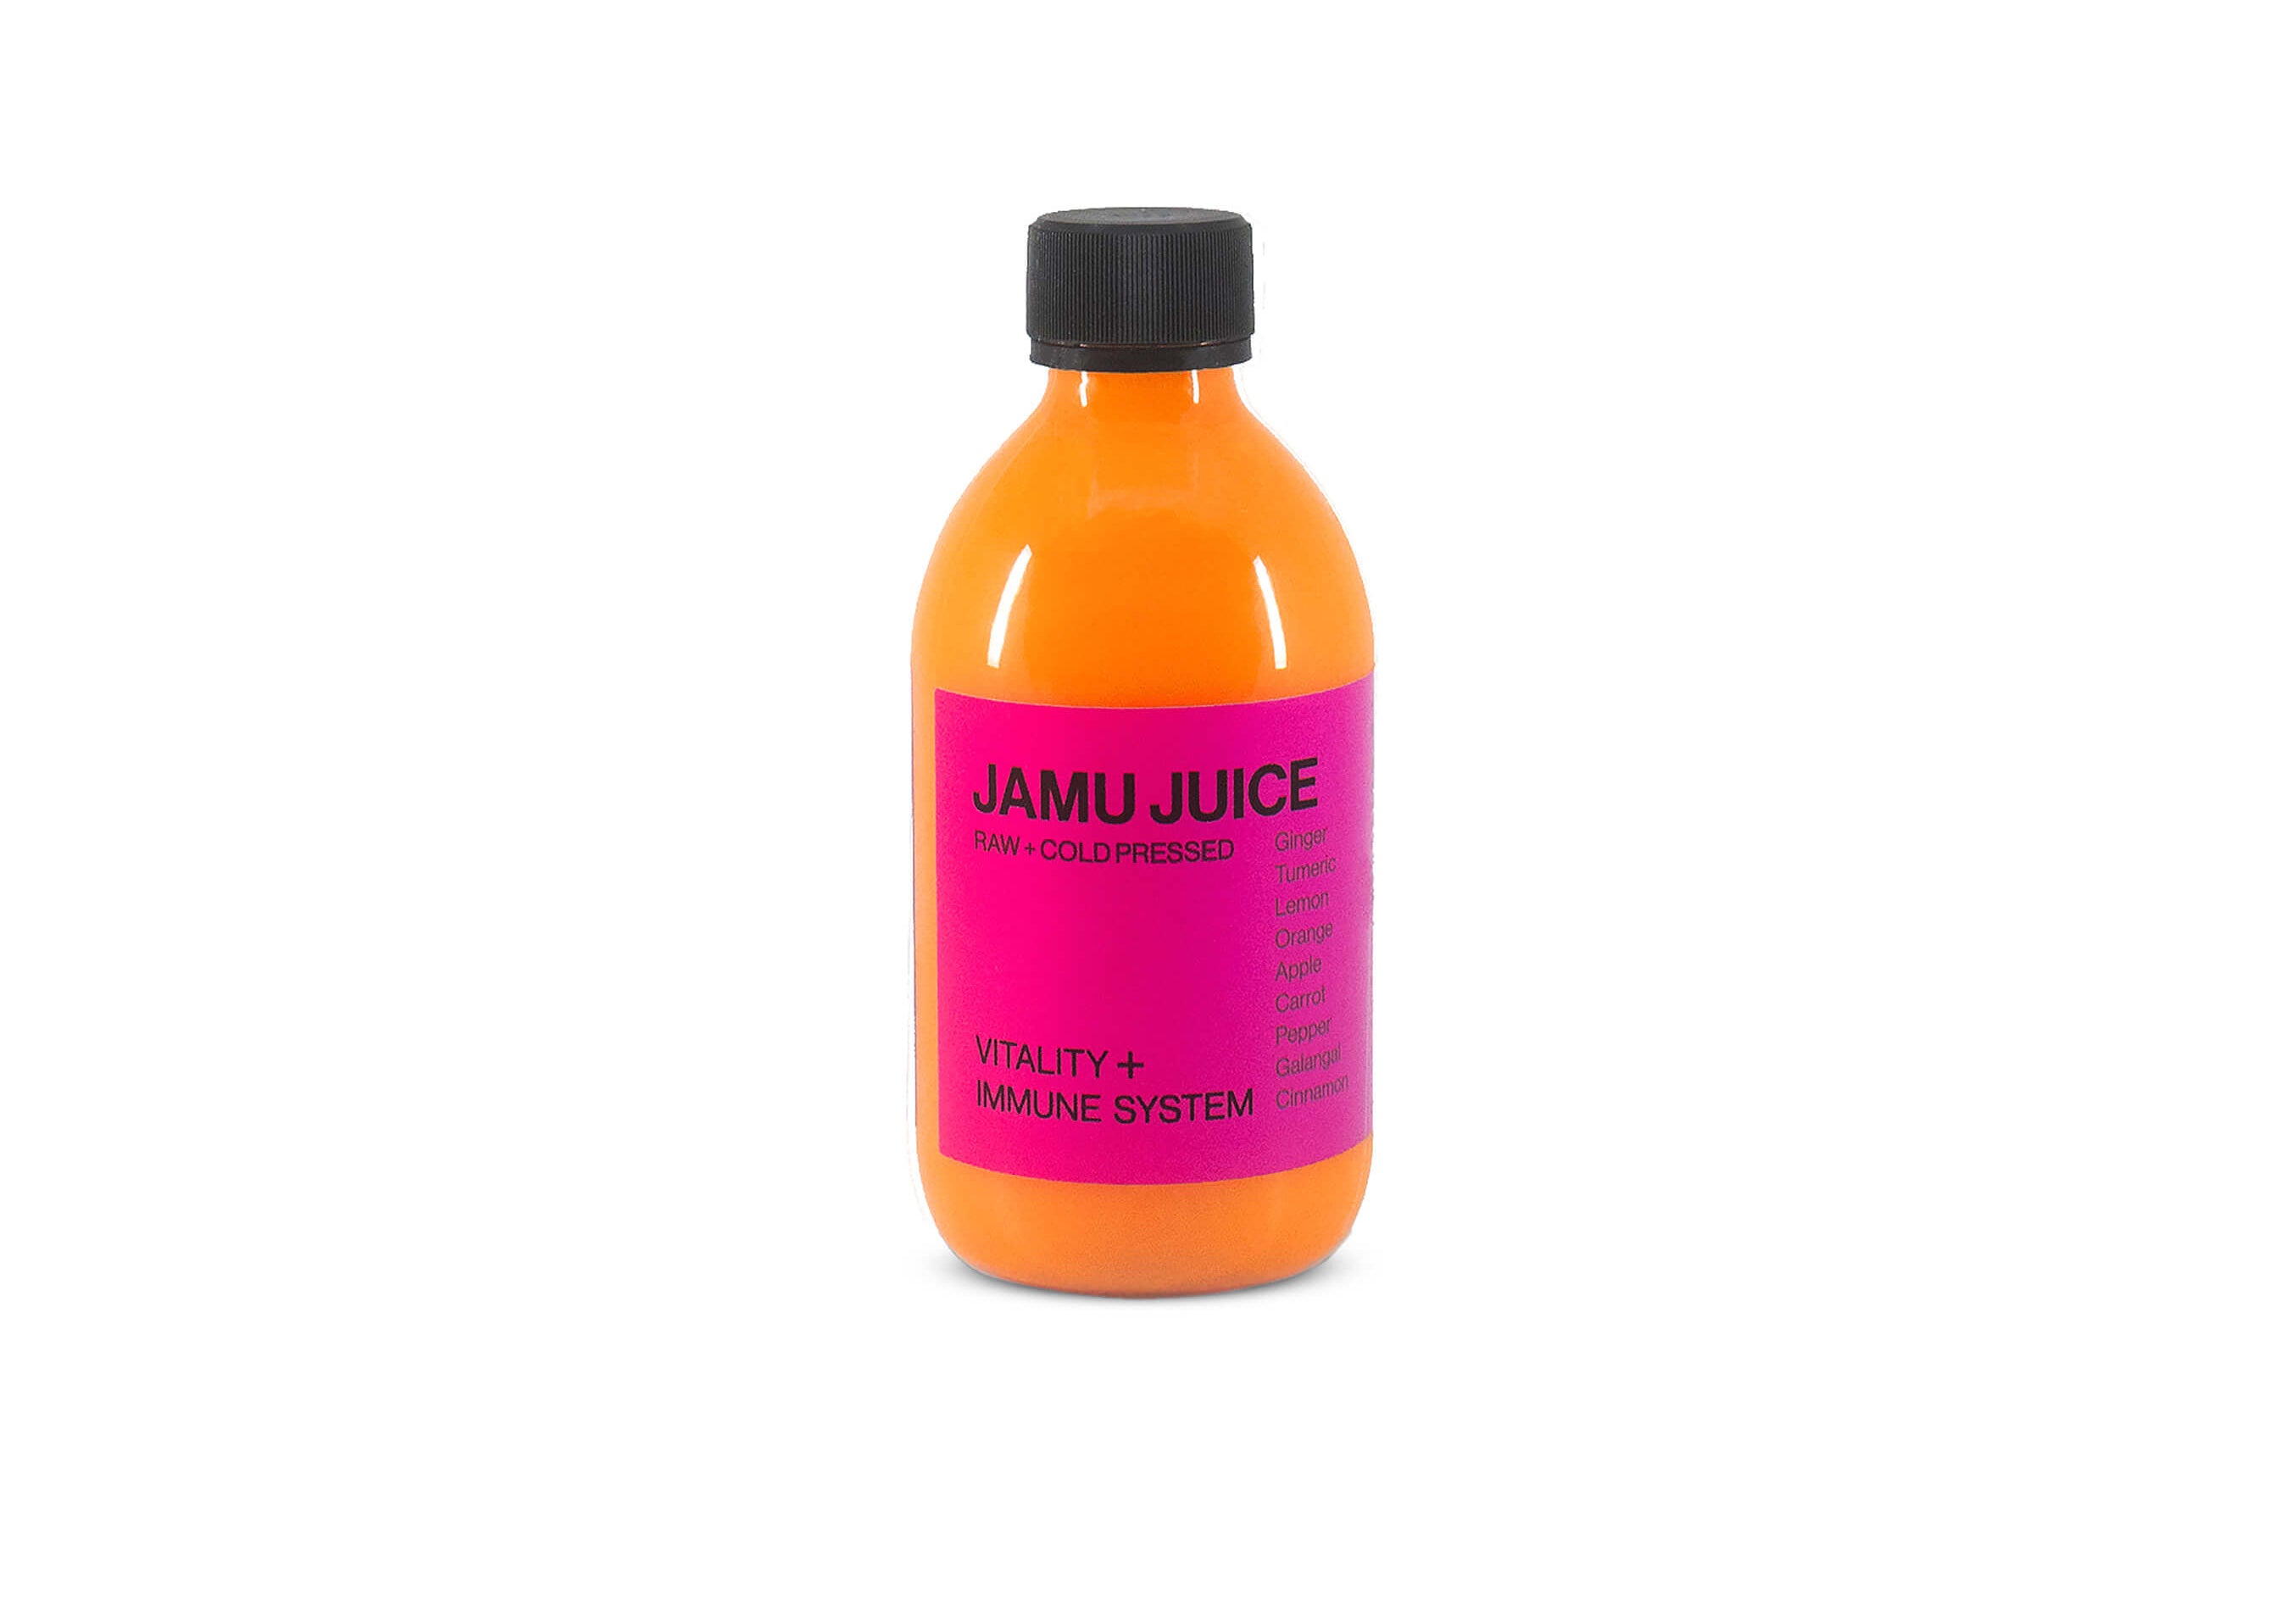 MONO Vitaminjuice Jamu Juice vor weissen Hintergrund ohne Schatten